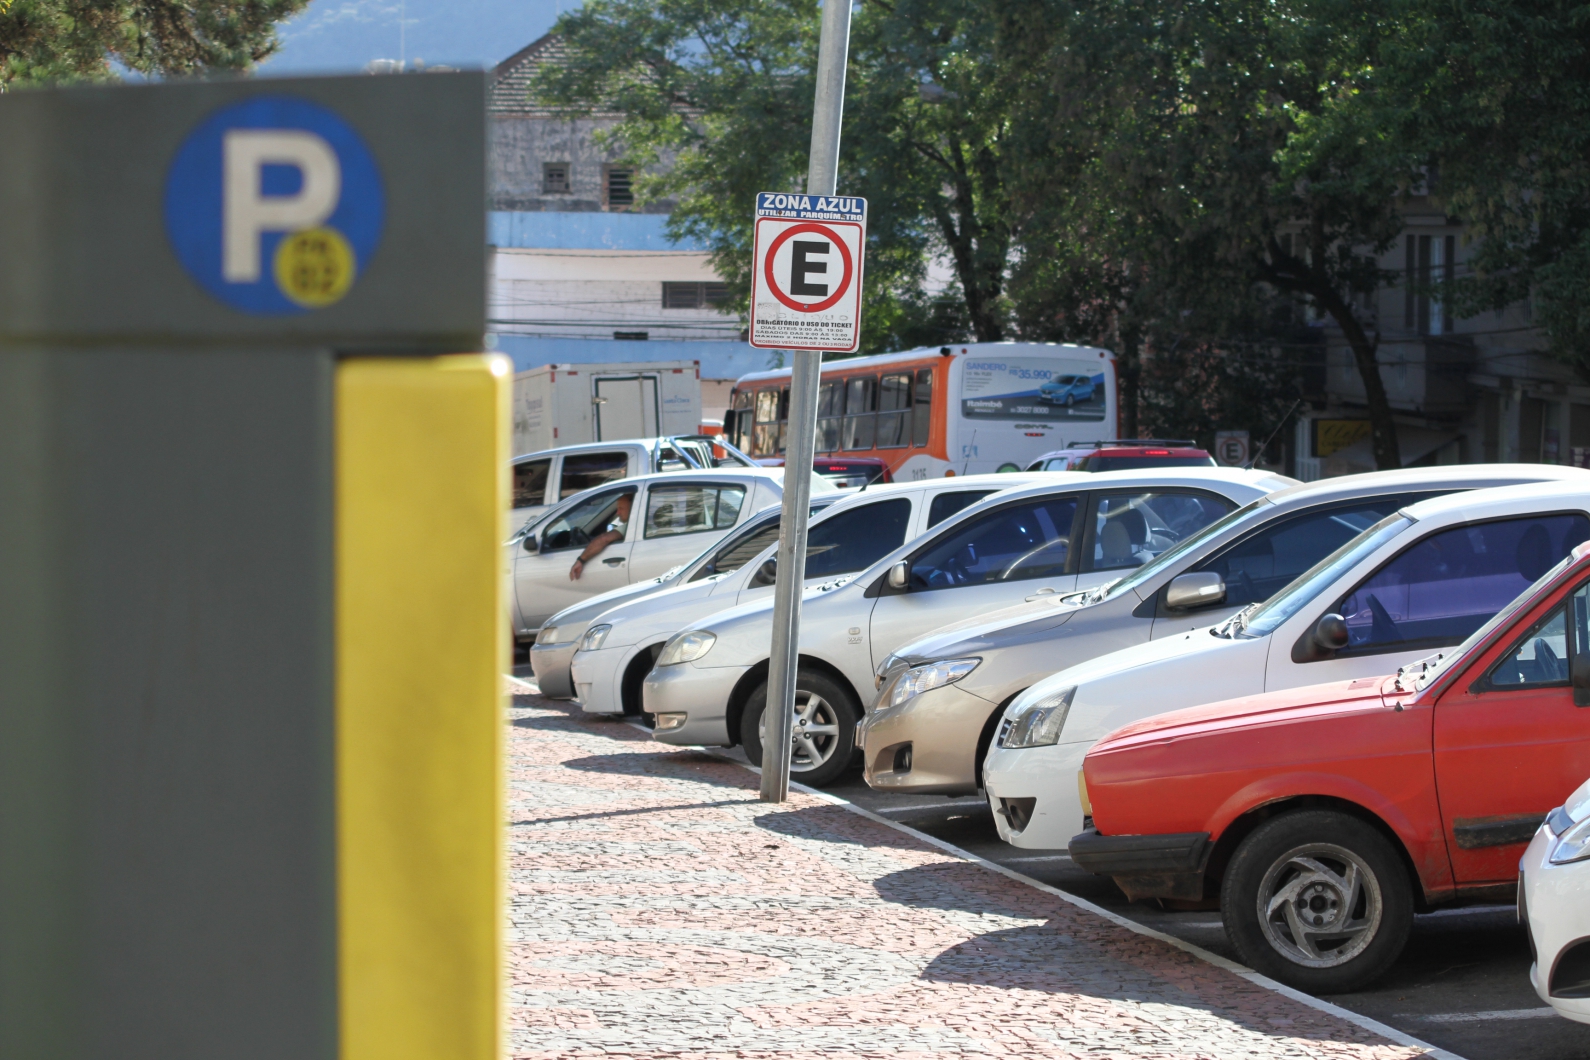 Derby é o 10º bairro do Recife com Zona Azul (PE)